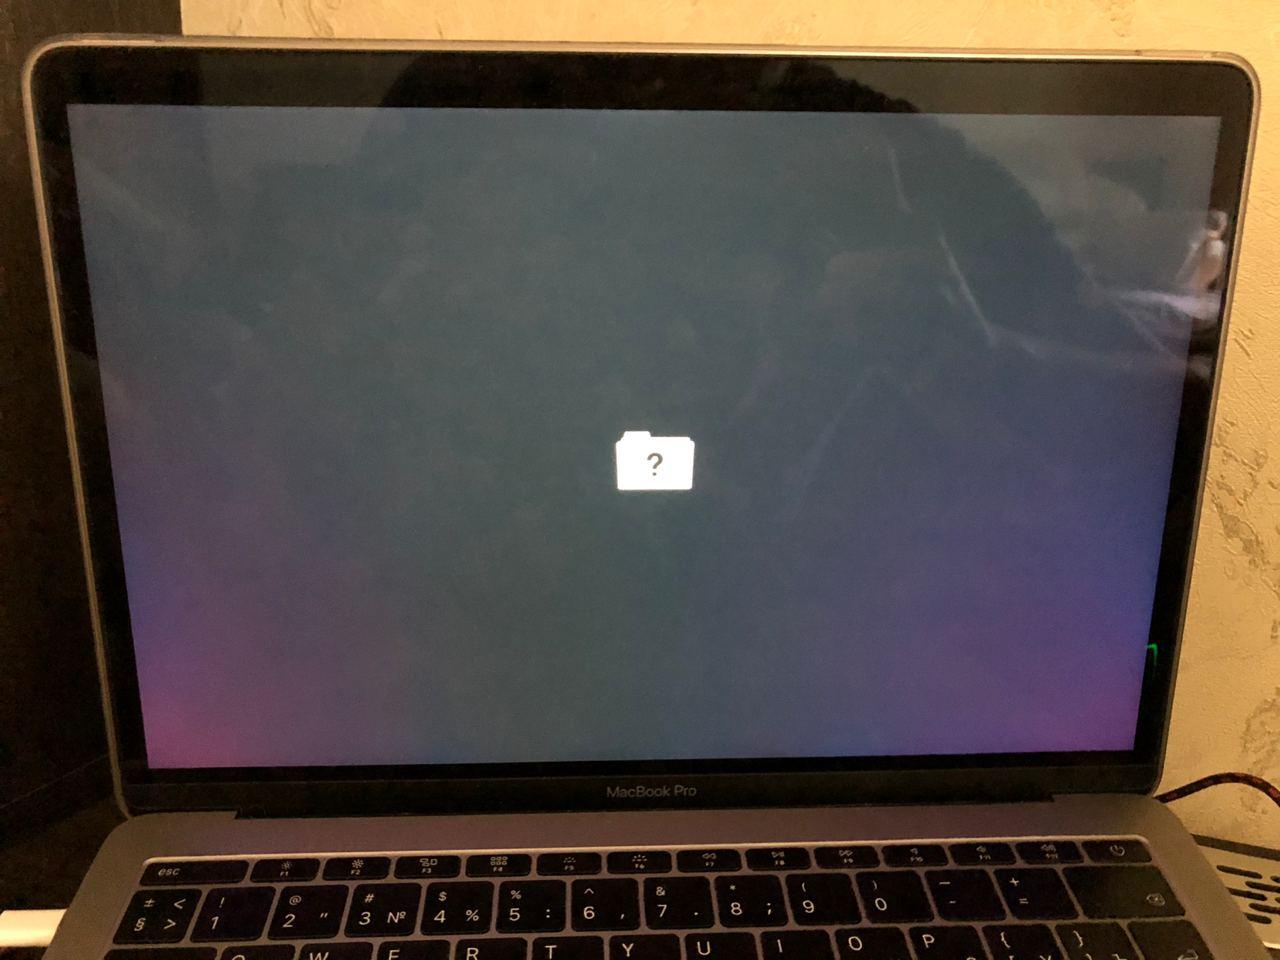 smør Bliv sur Afståelse Macbook pro 2017 16GB (strange issue with… - Apple Community